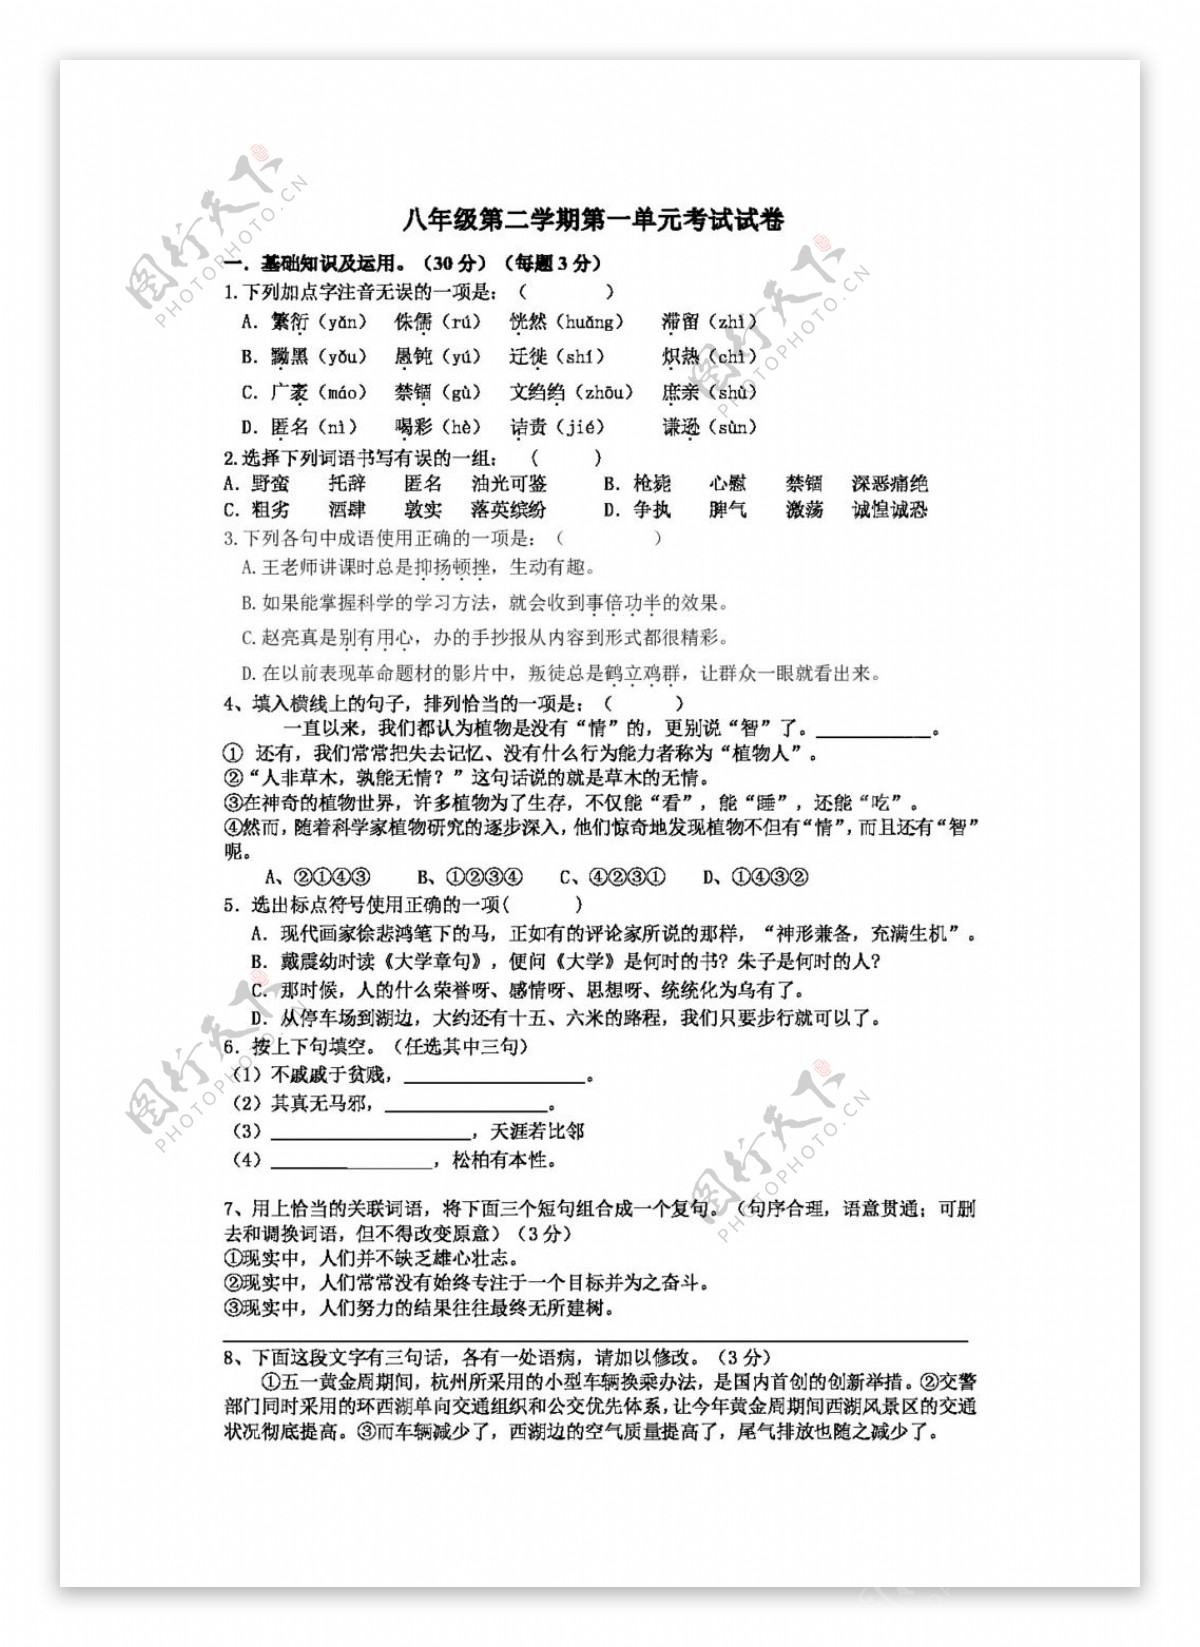 语文人教版初中语文八年级下册第一单元单元测试